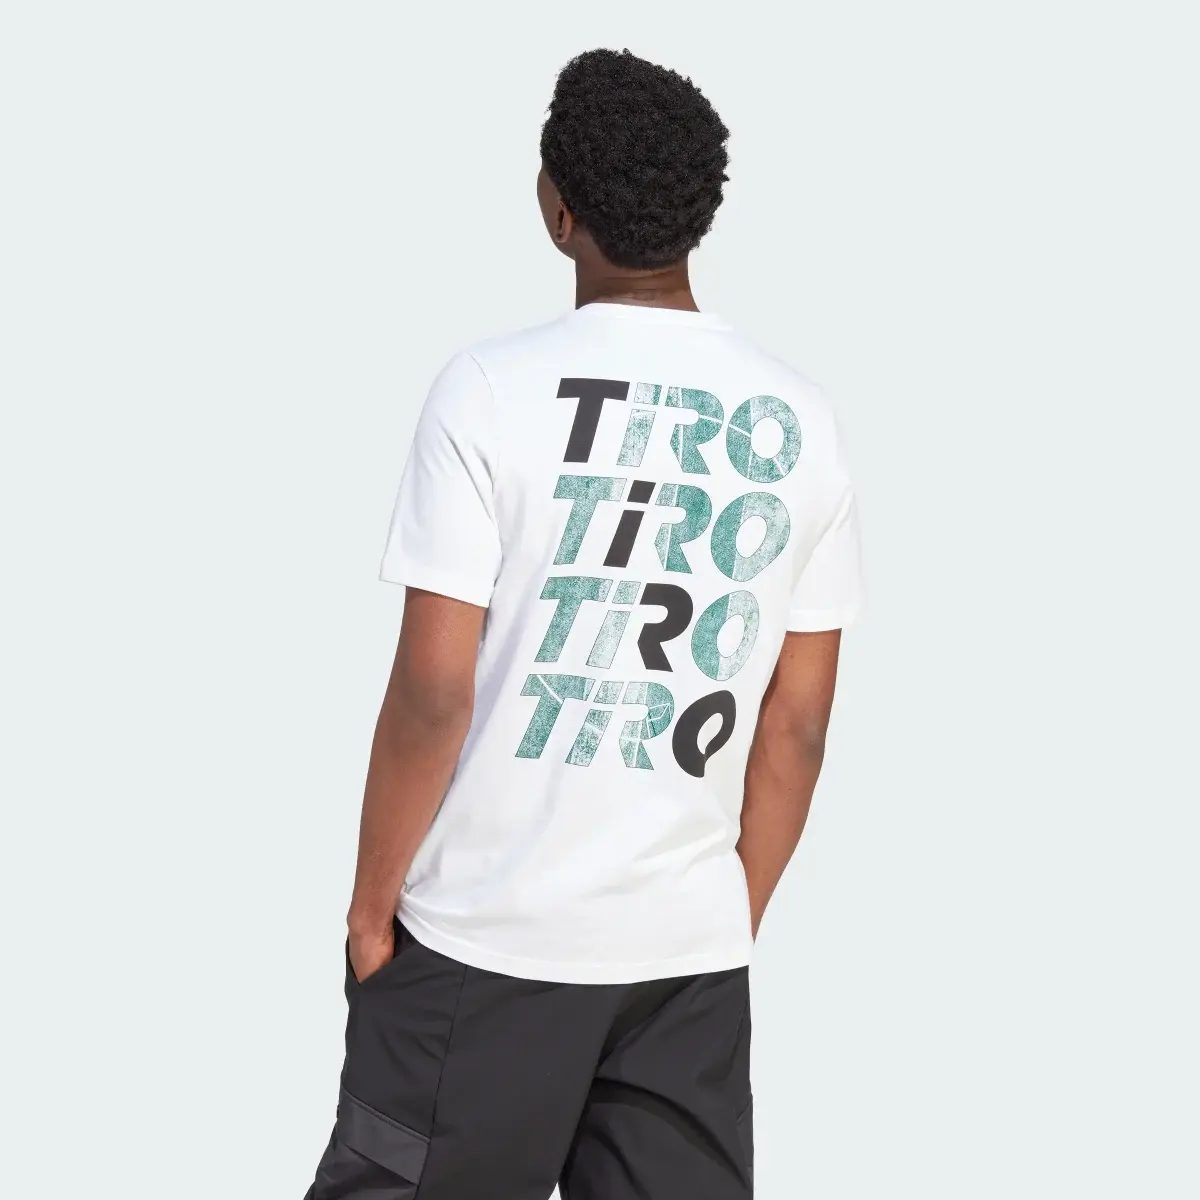 Adidas Tiro Wordmark Graphic T-Shirt. 3